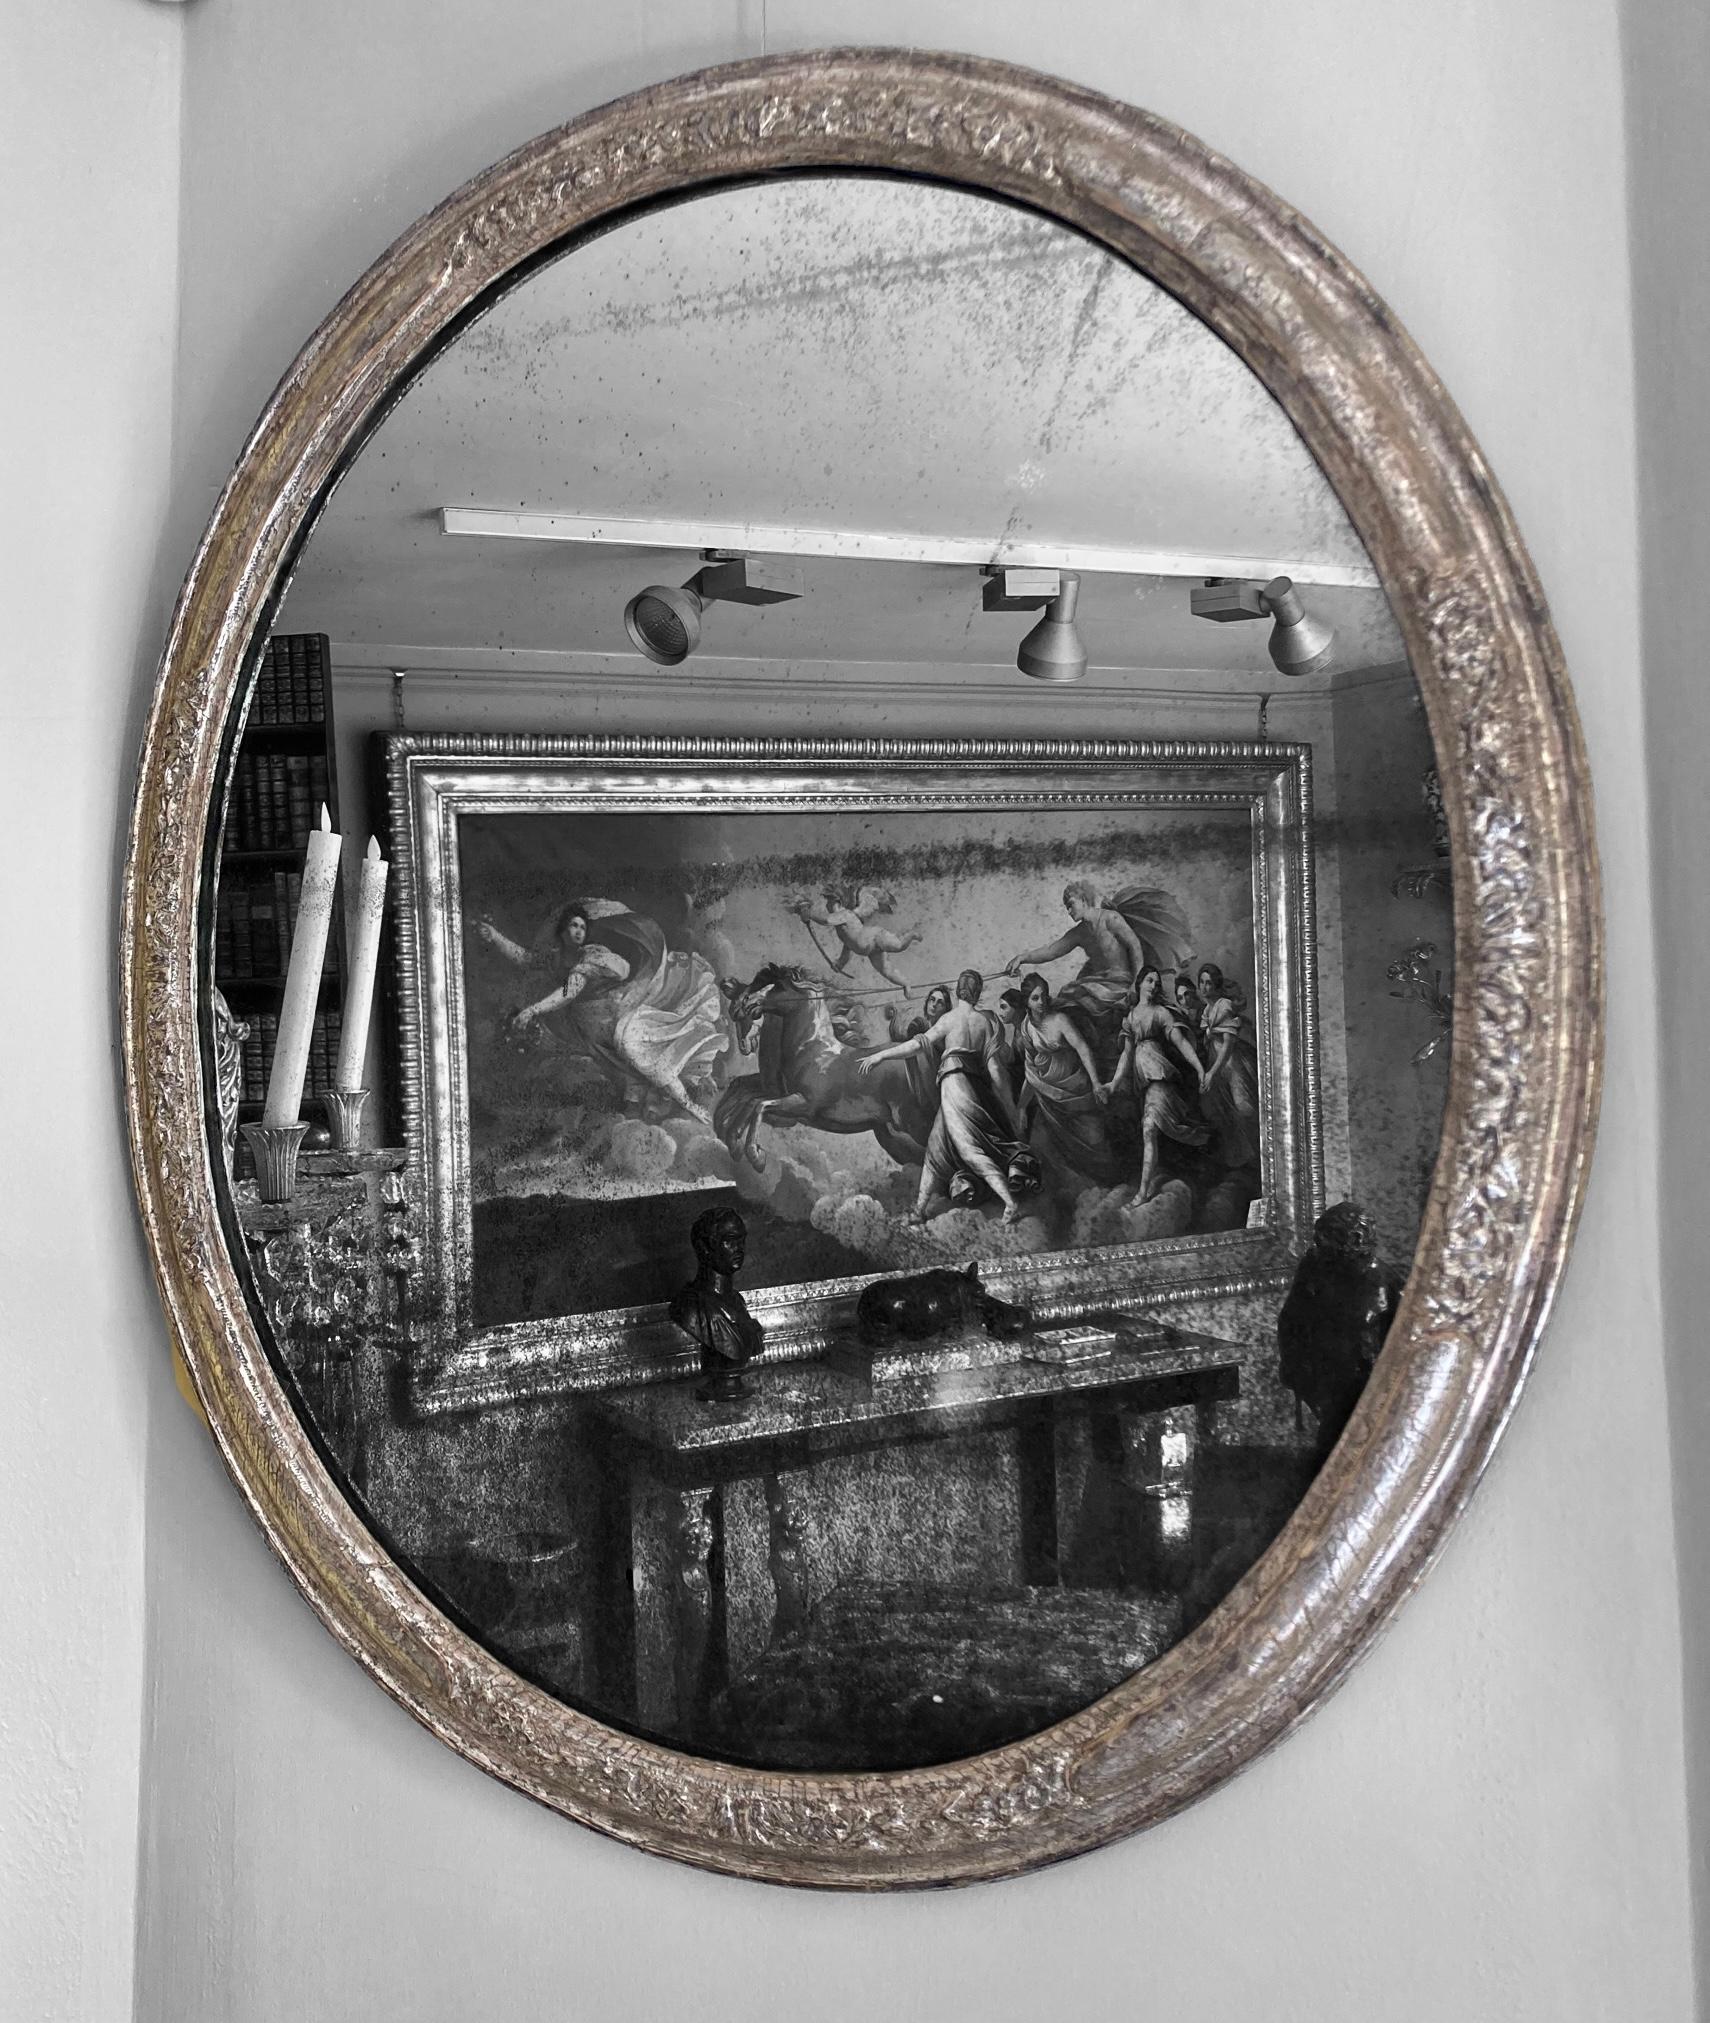 Un superbe miroir ovale en argent doré du XVIIIe siècle, bien proportionné, avec une plaque de miroir en mercure à l'ancienne.
Sculpture sur le dessus, le dessous et les deux côtés.